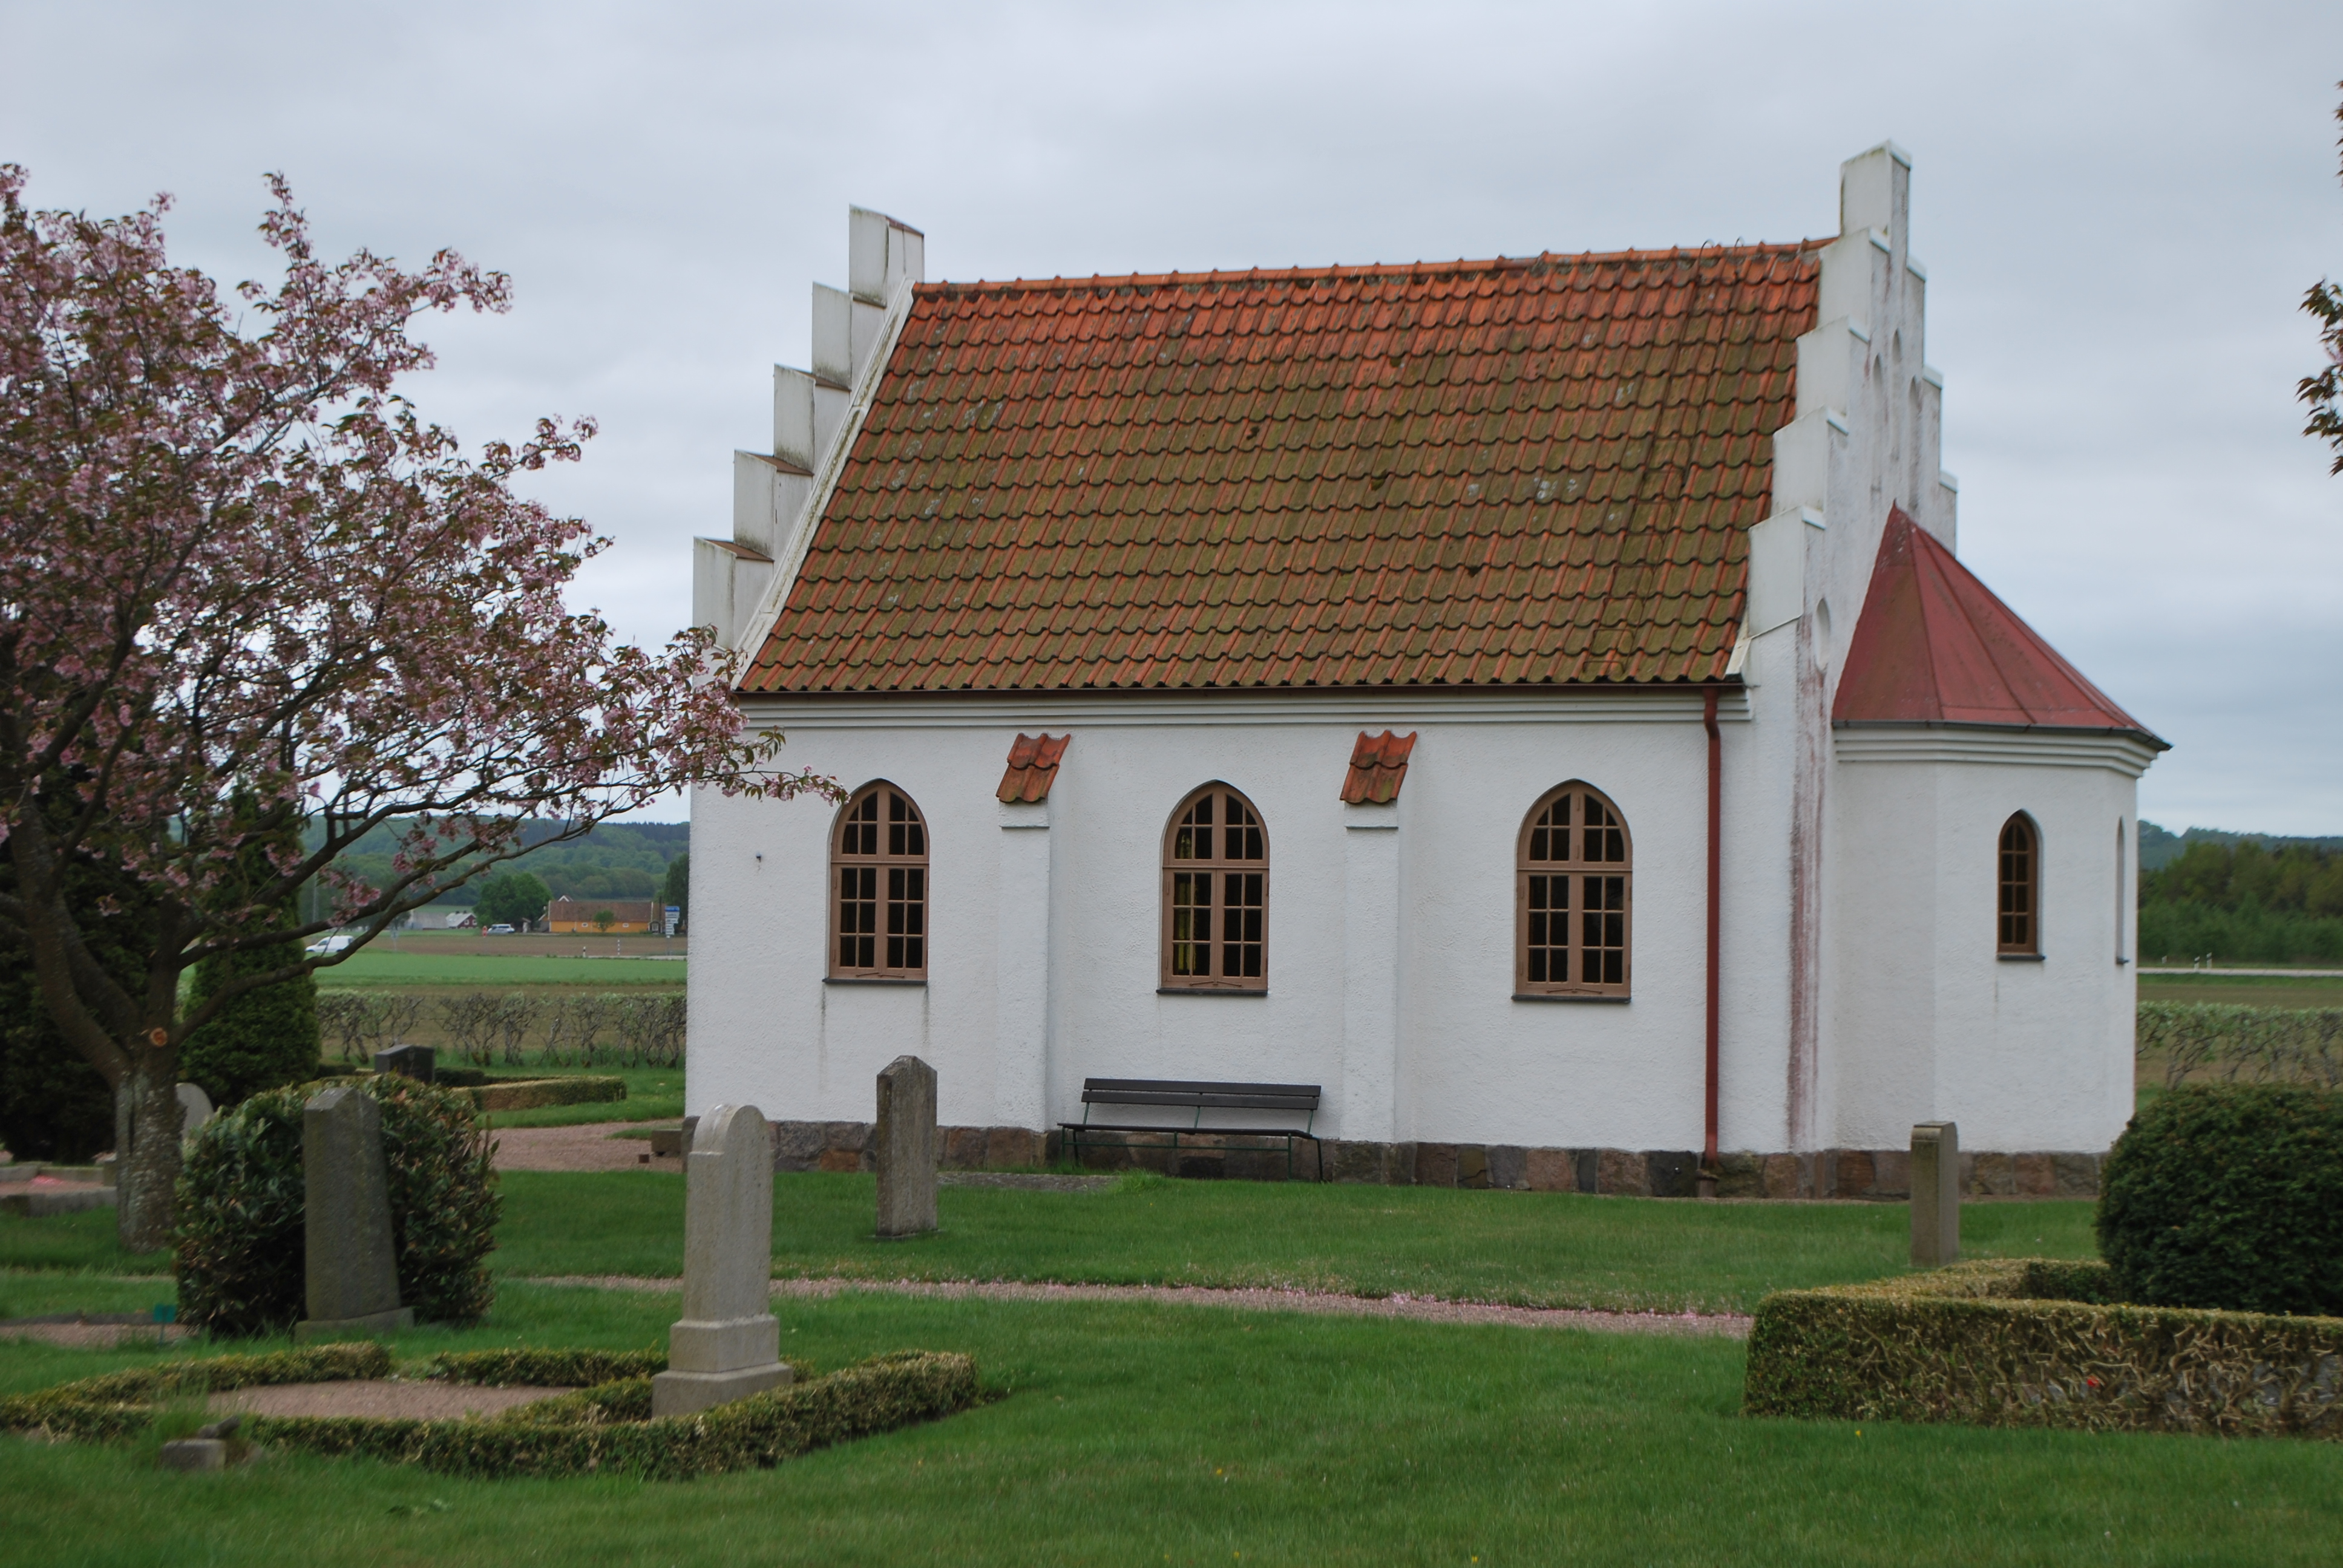 Västra Sönnarslövs kapell